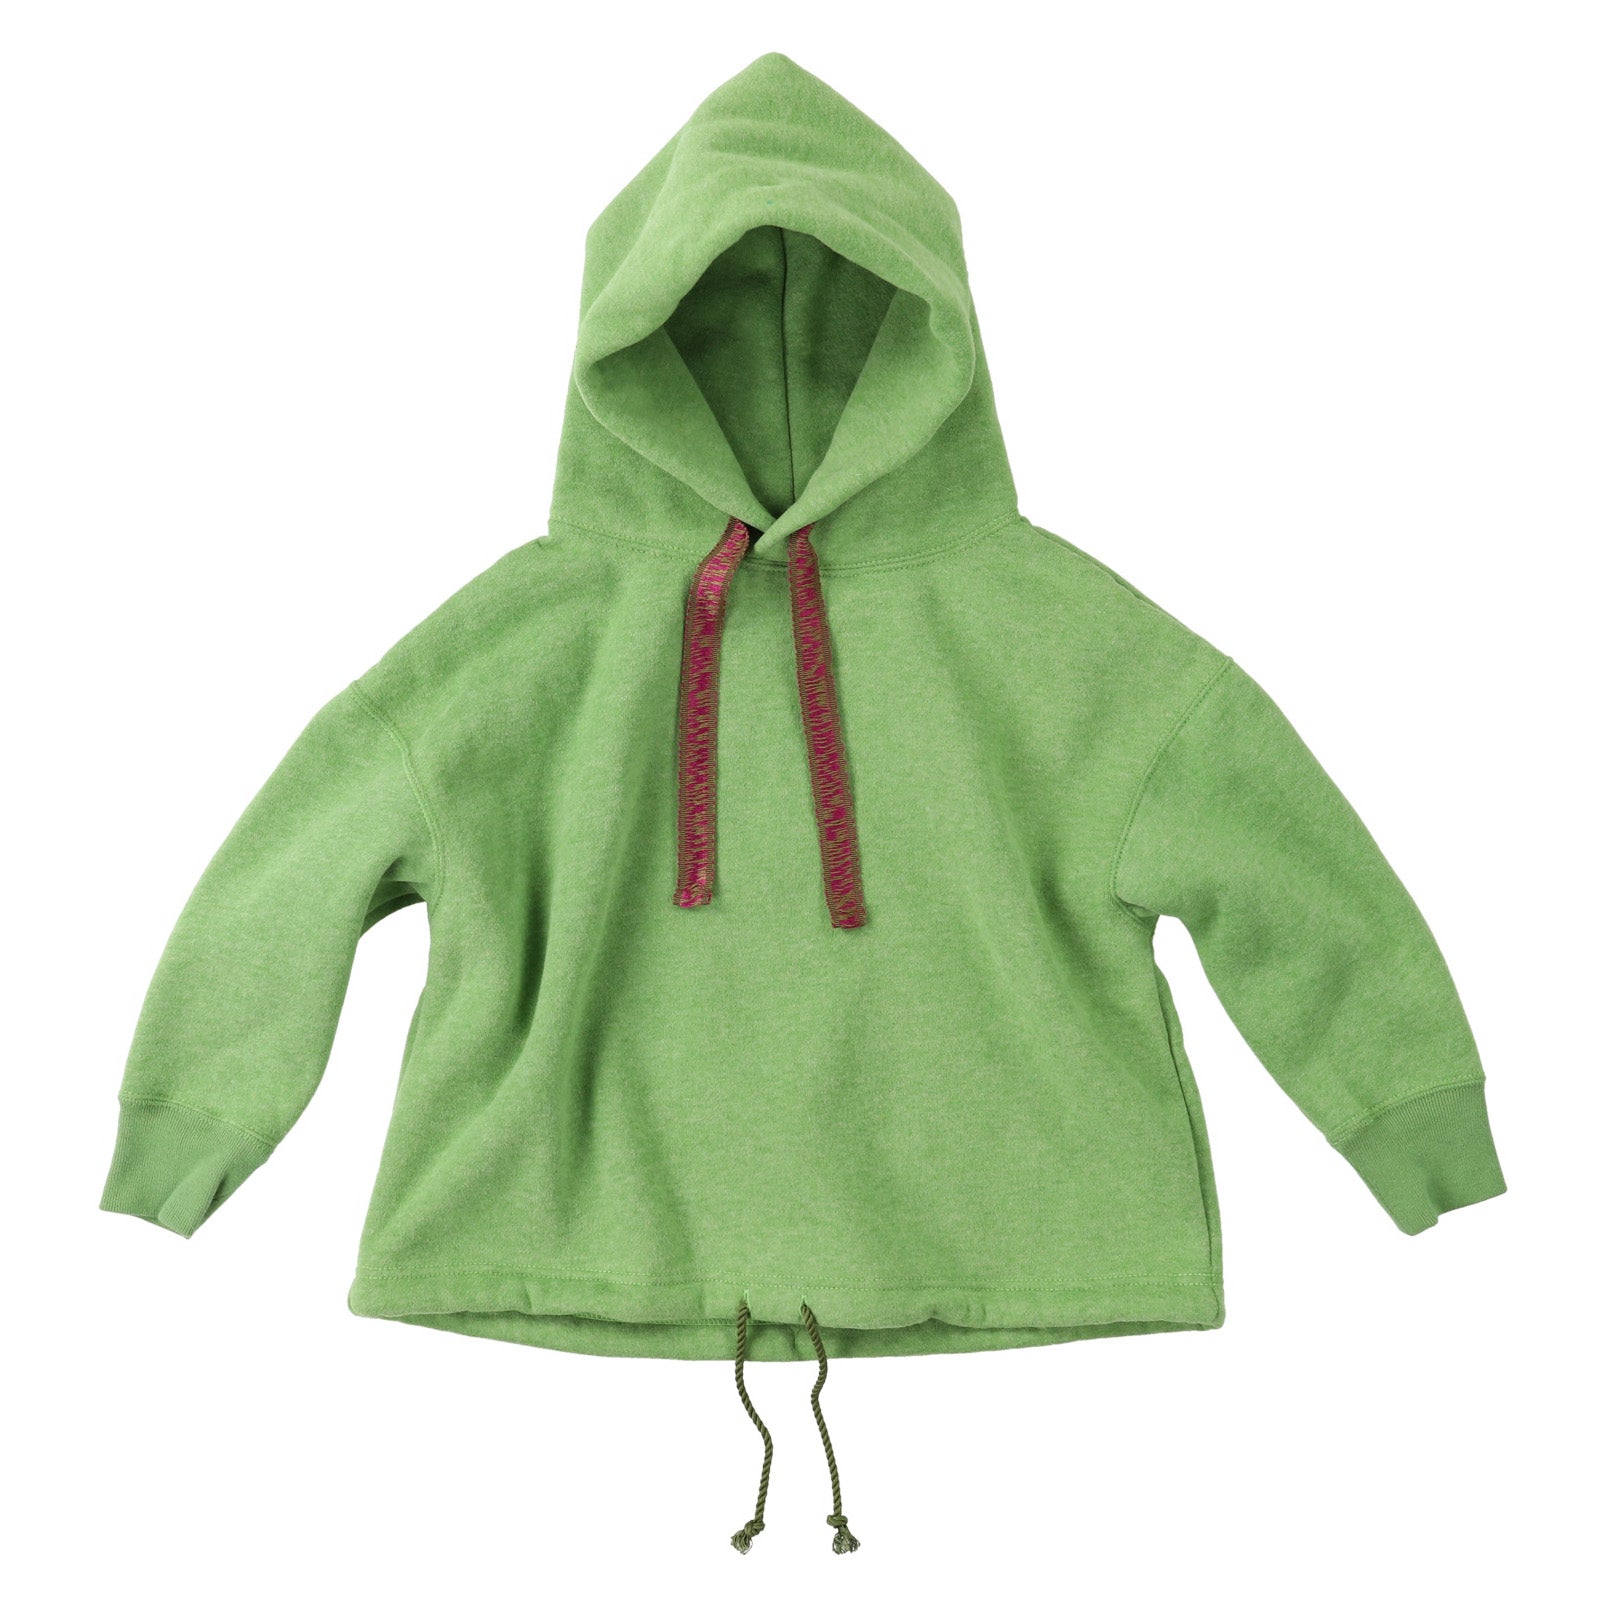 Boys Green Hooded Sweatshirt